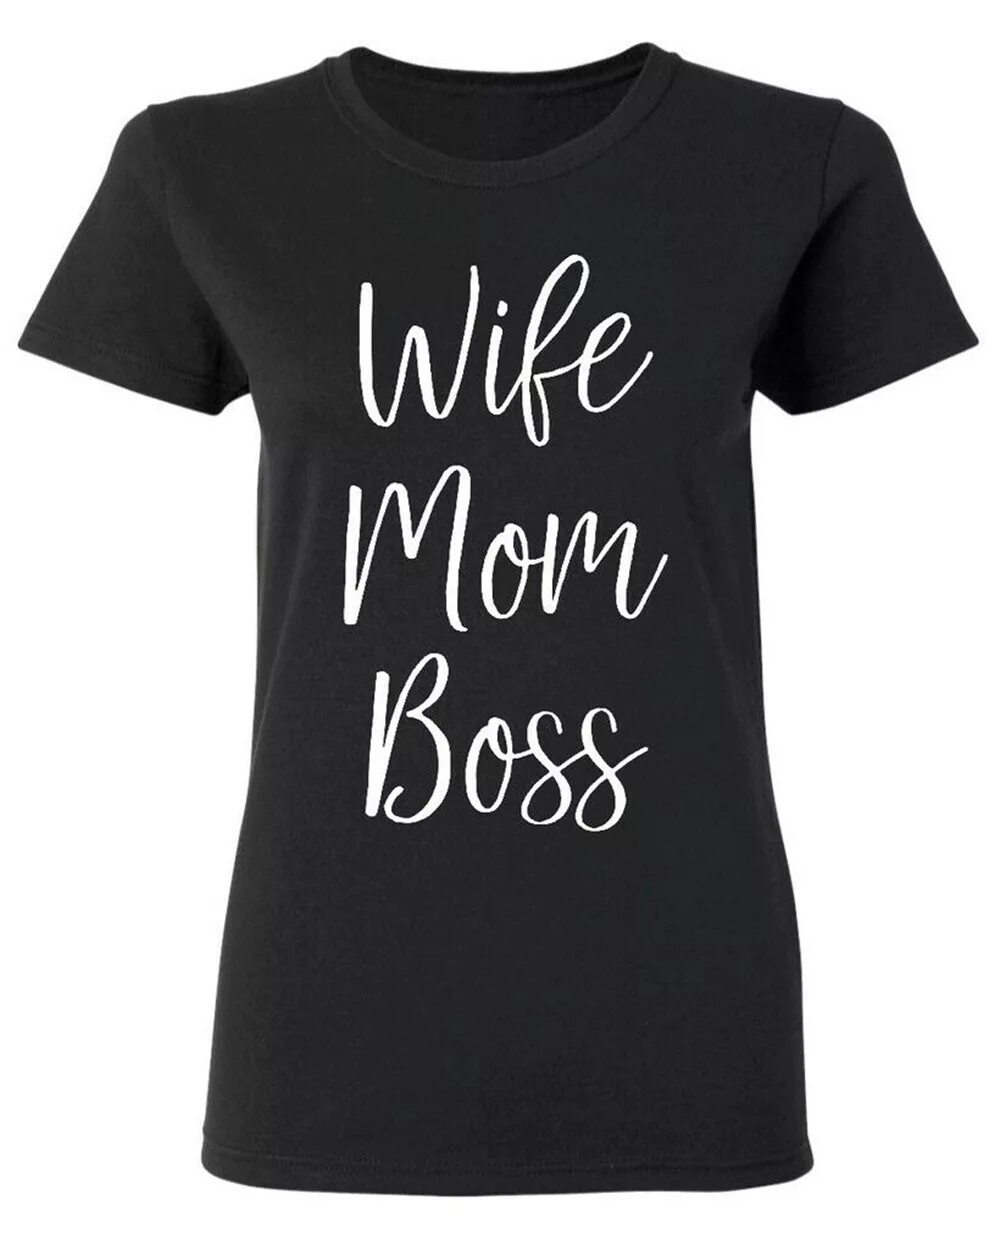 Майка wife mom Boss. Футболка wife mom Boss. Футболка женская мама. Жена мама босс футболка. I love boss